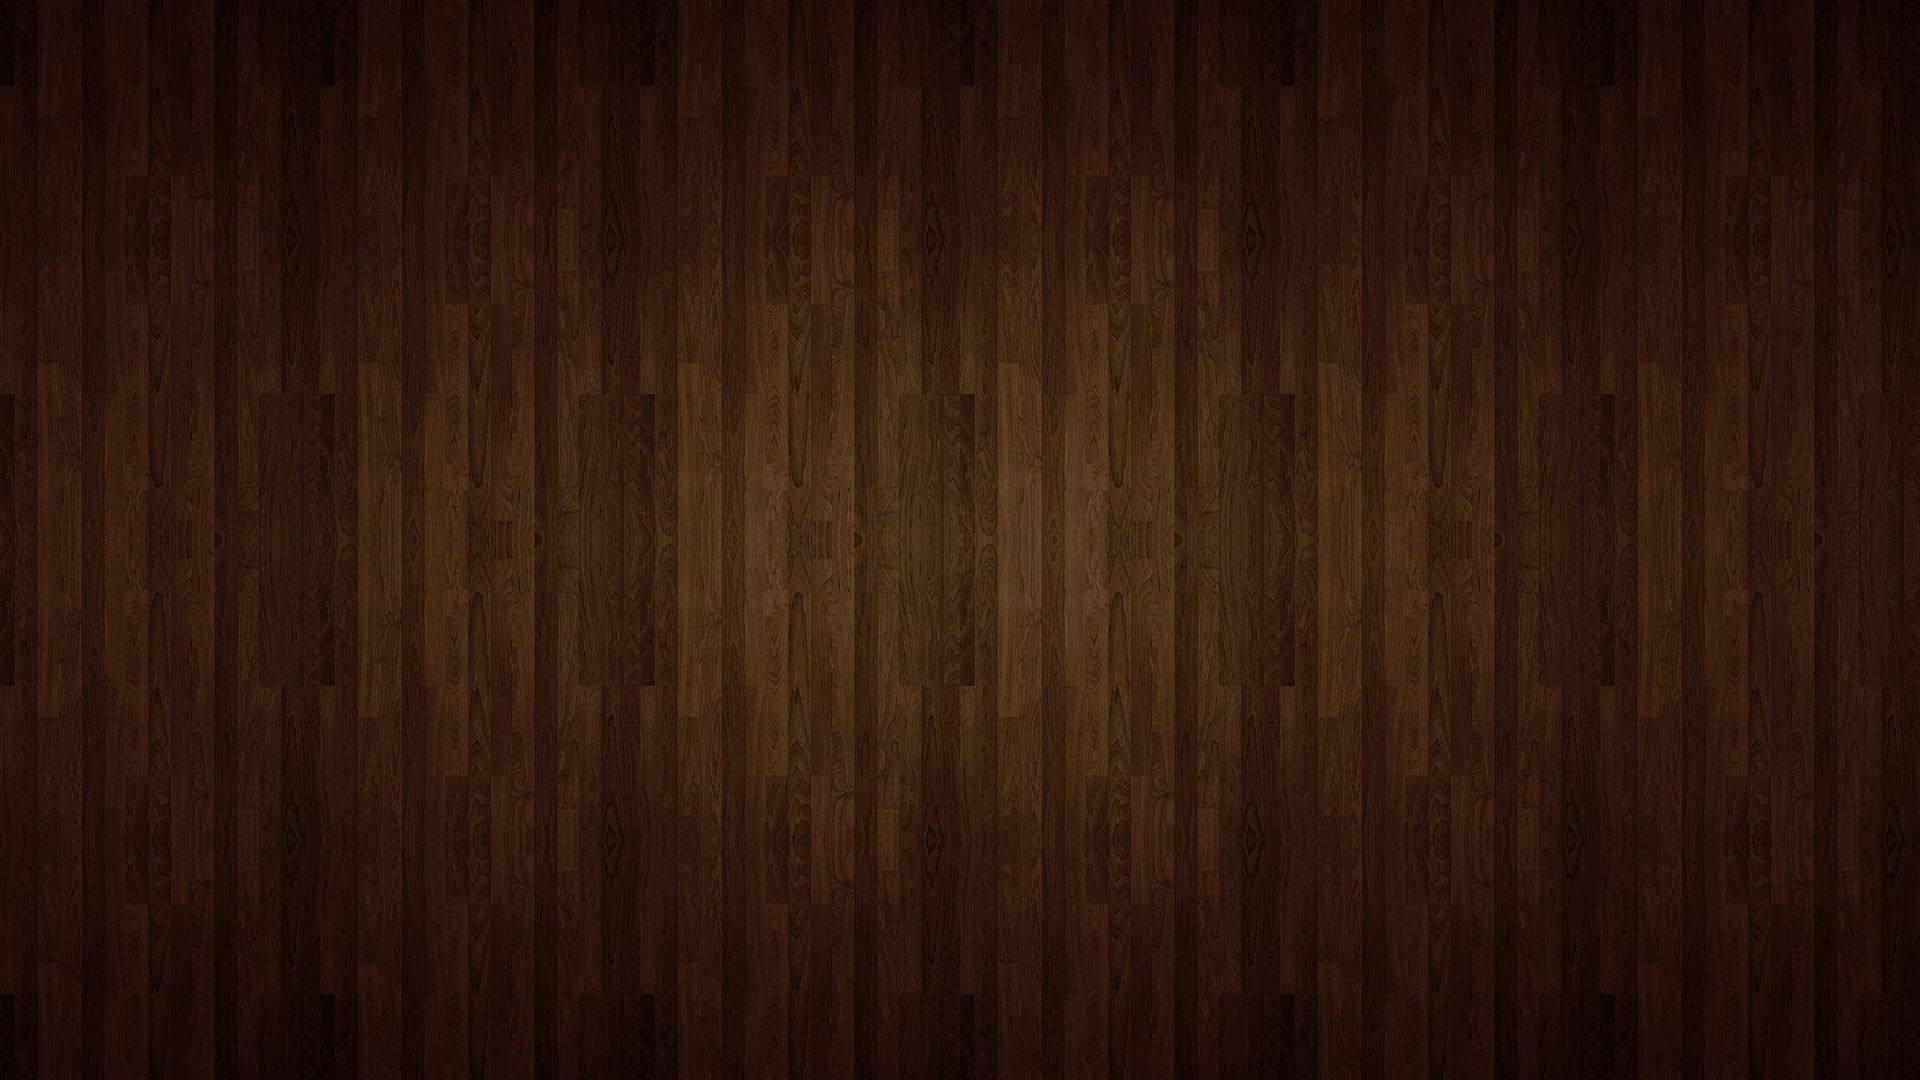 Wood grain ipad wallpaper danasrhm.top